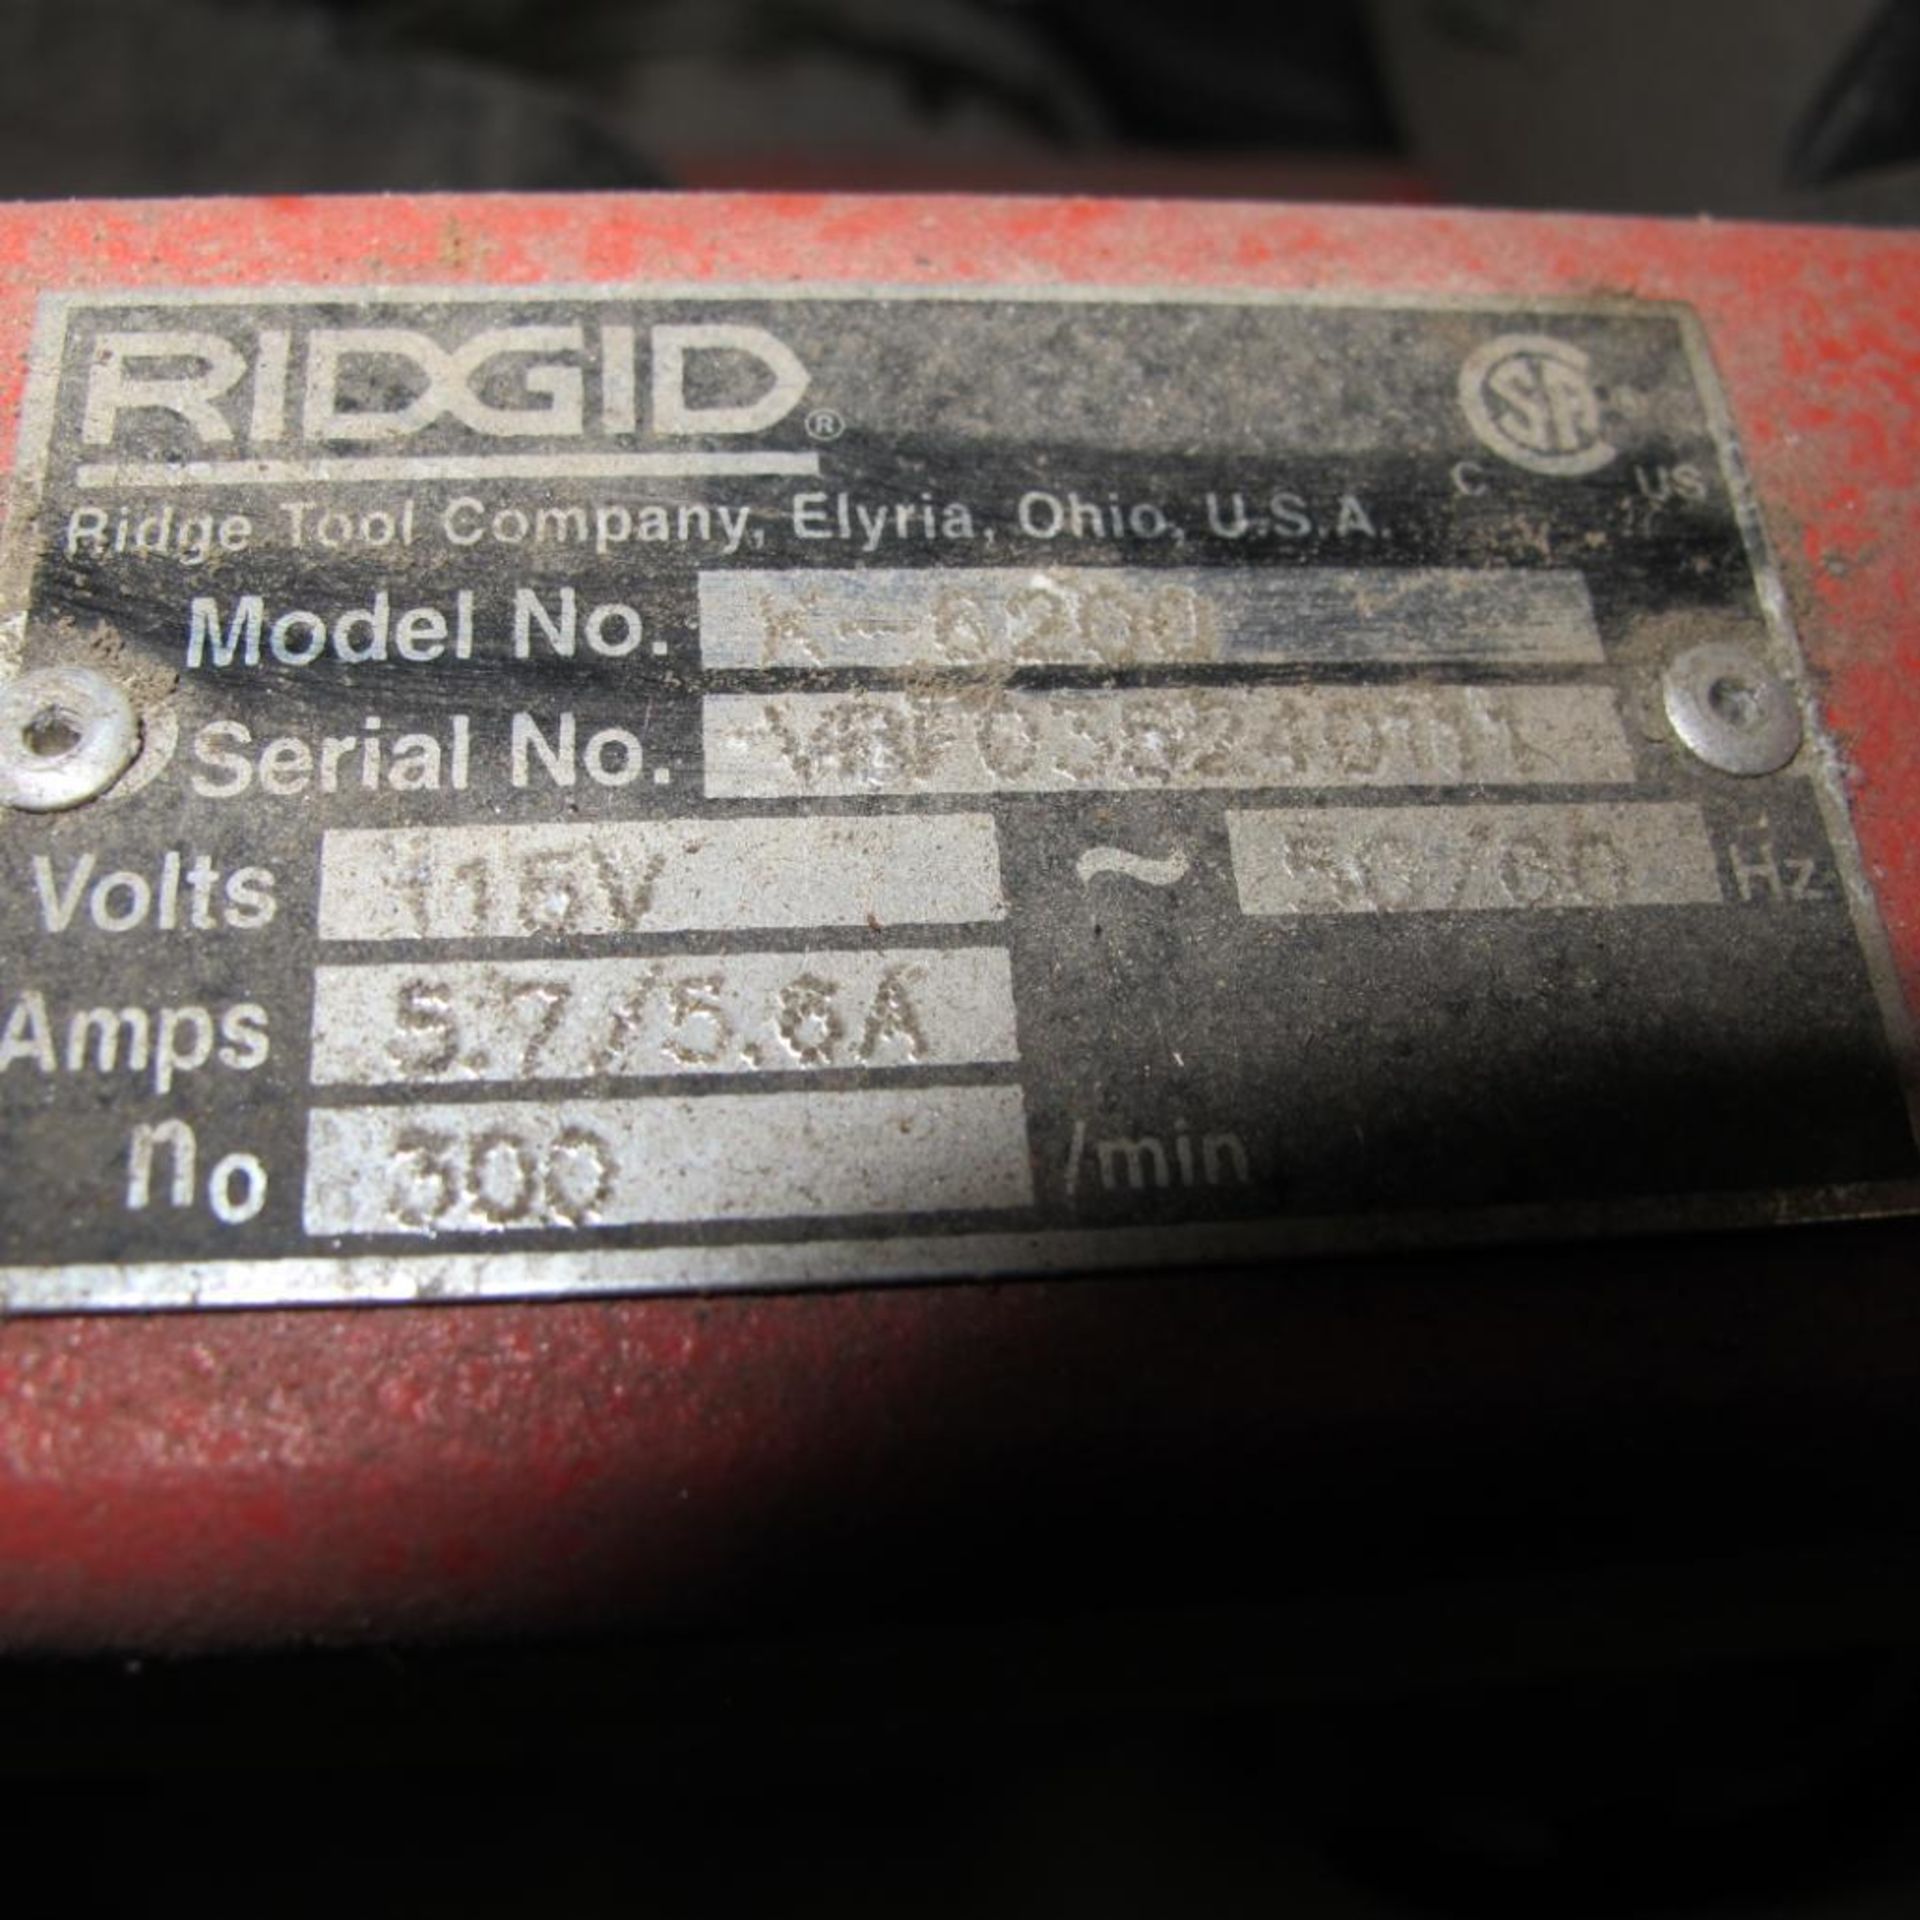 RIDGID K-8206 ELECTRIC SNAKE/PLUMBING CLEANER (MACHINE SHOP) - Image 2 of 2